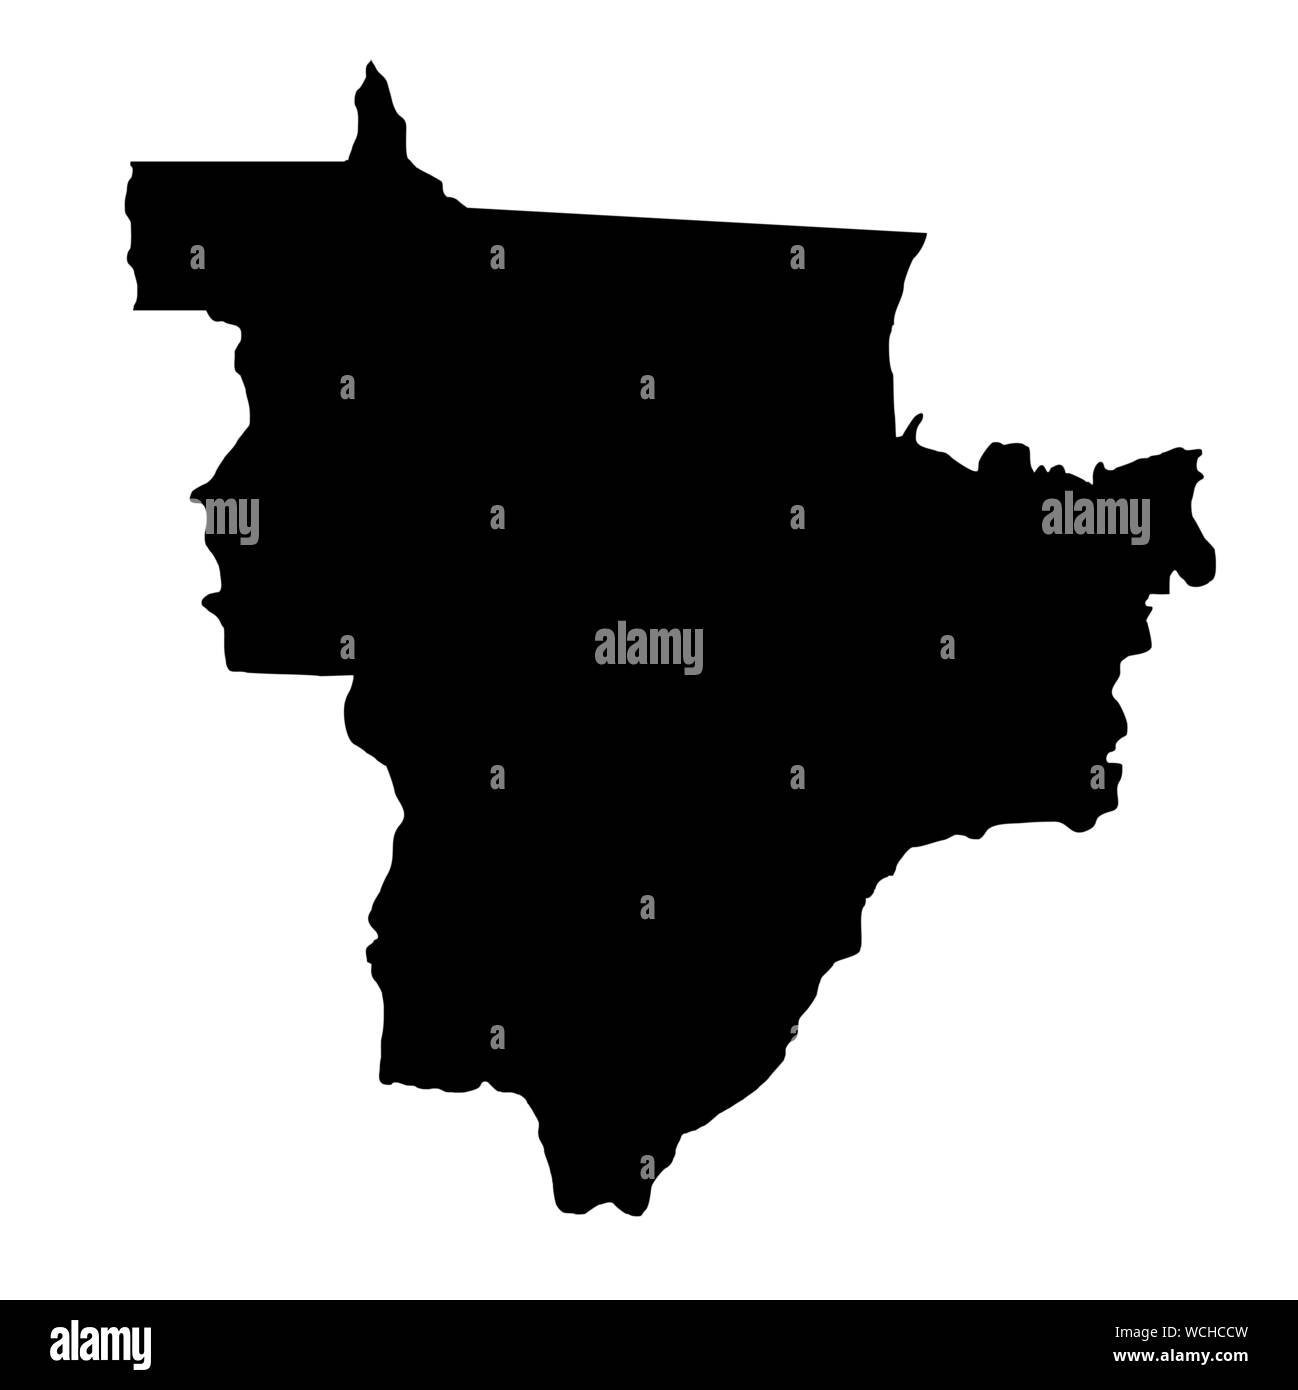 Brasilien Mittelwesten silhouette Karte Stock Vektor